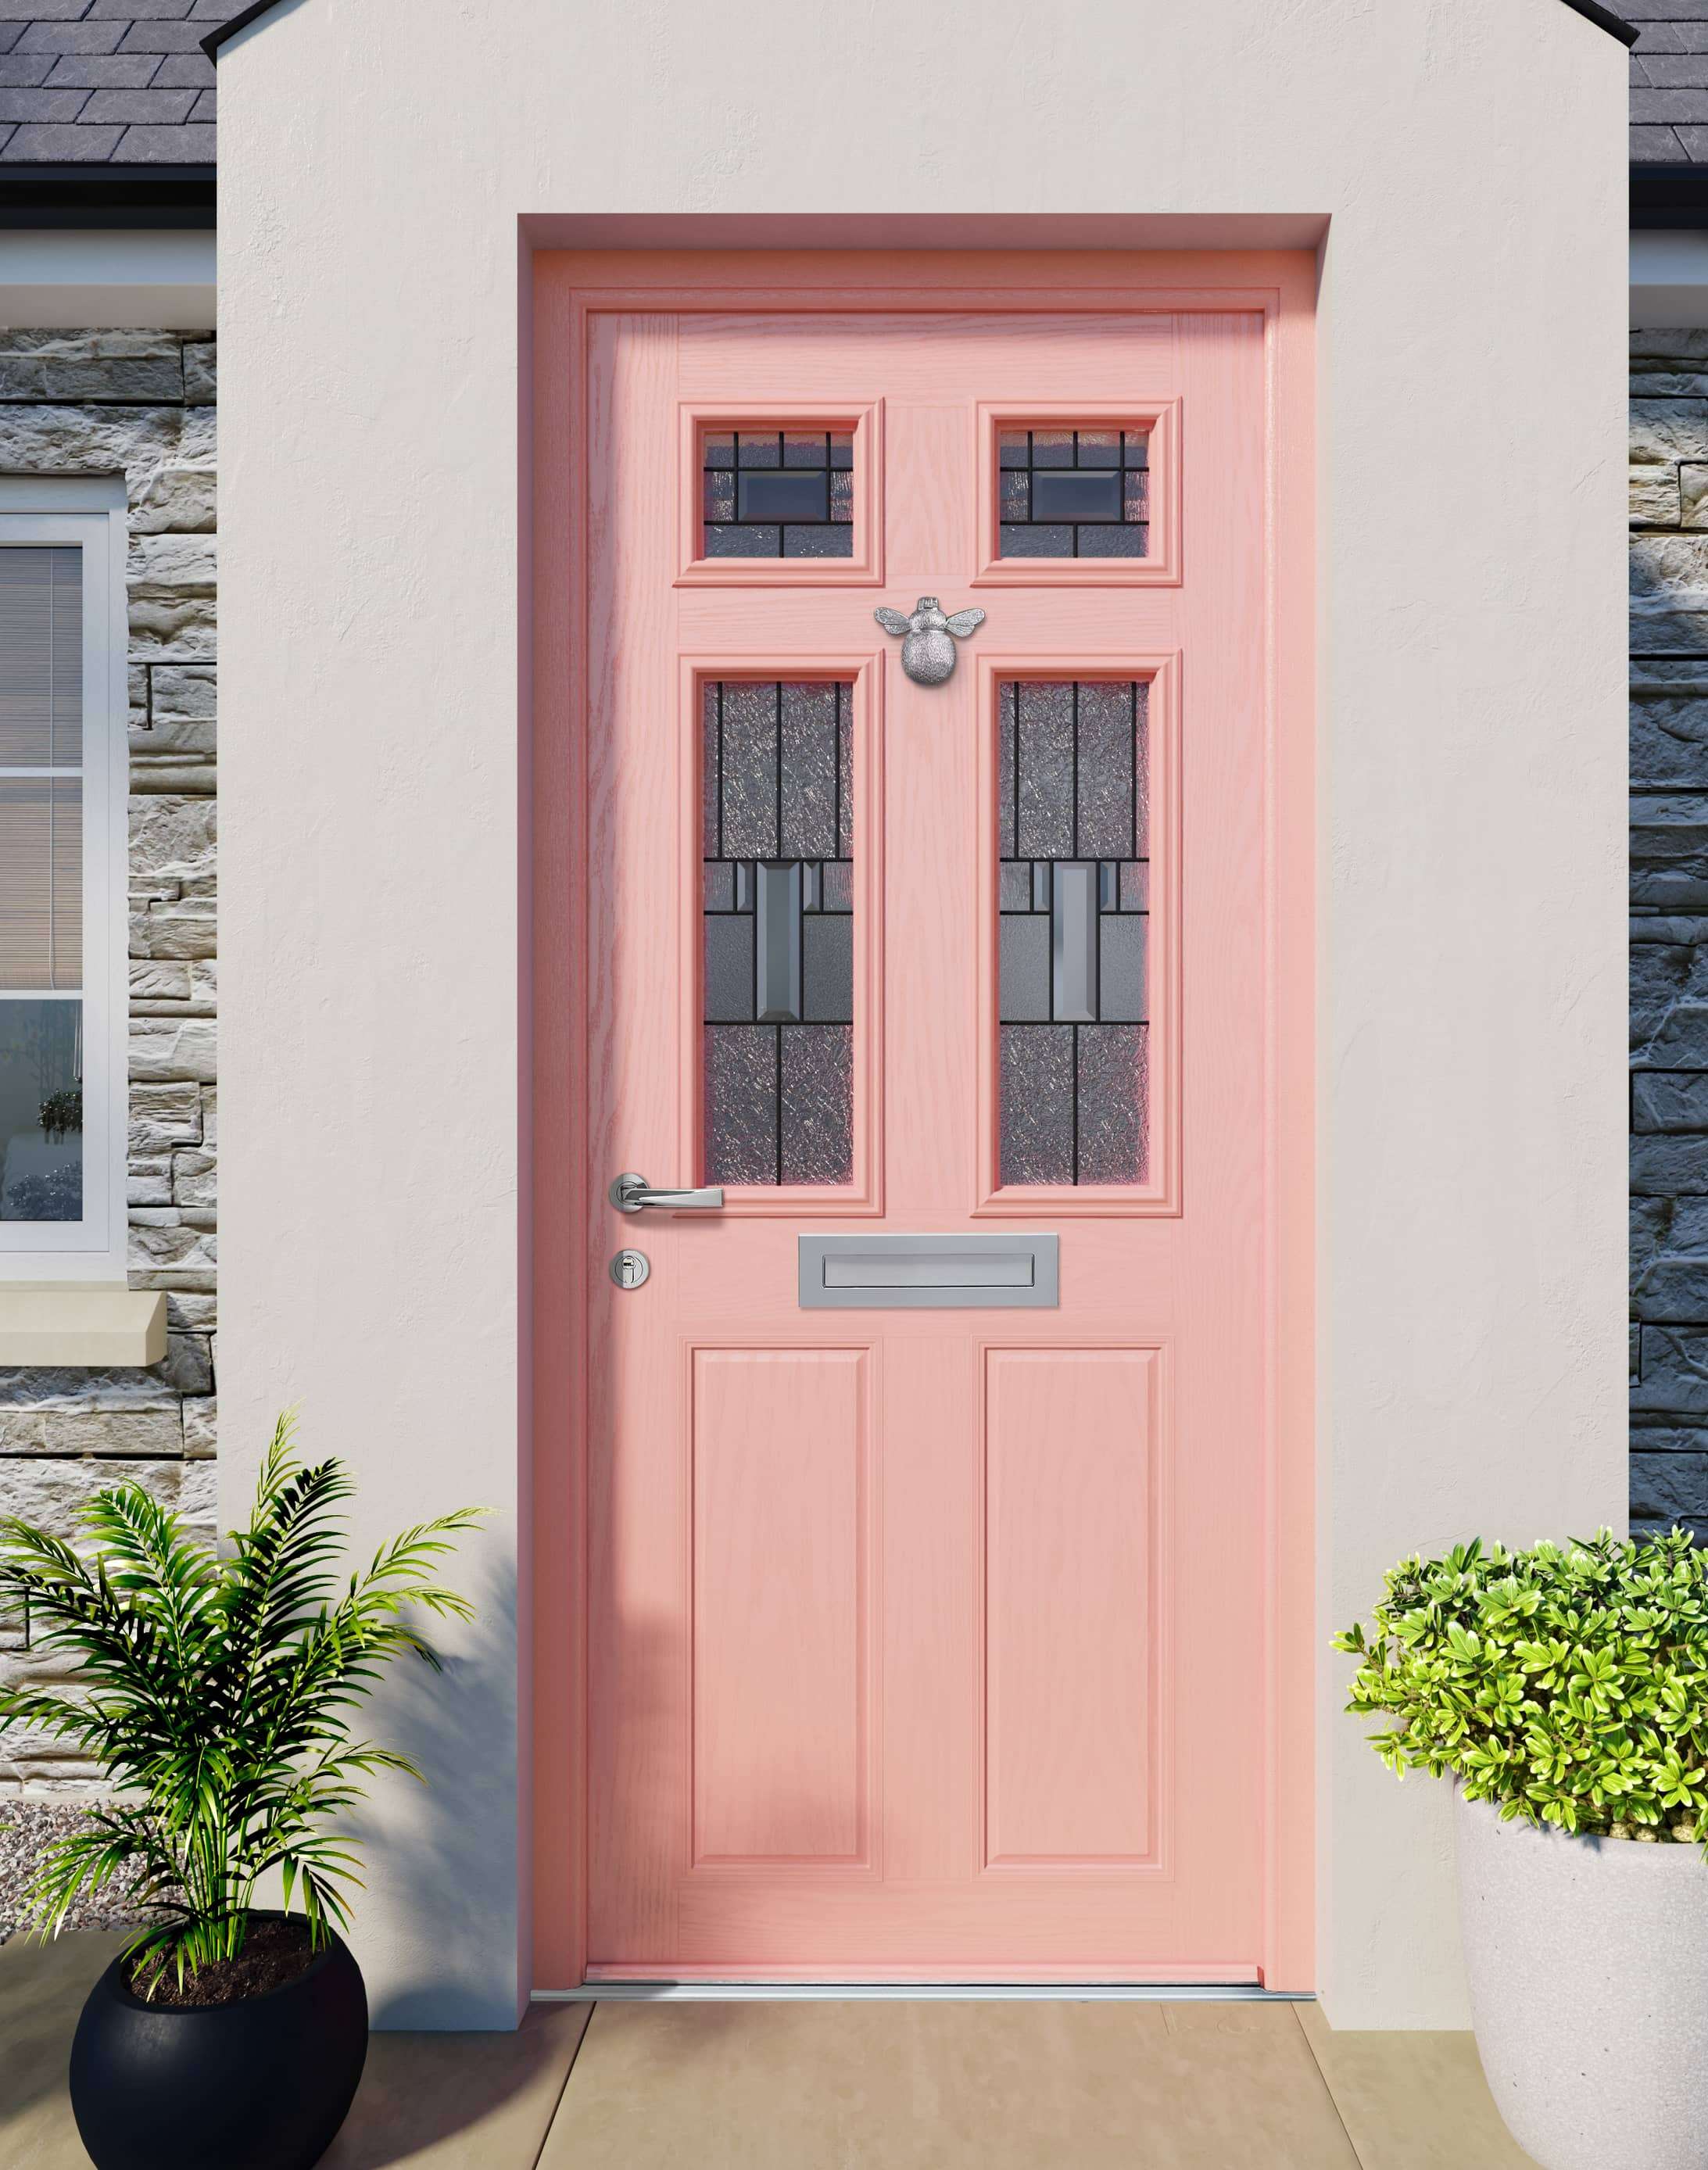 Apeer Inspiration - Accessiblity Pink Door with knocker